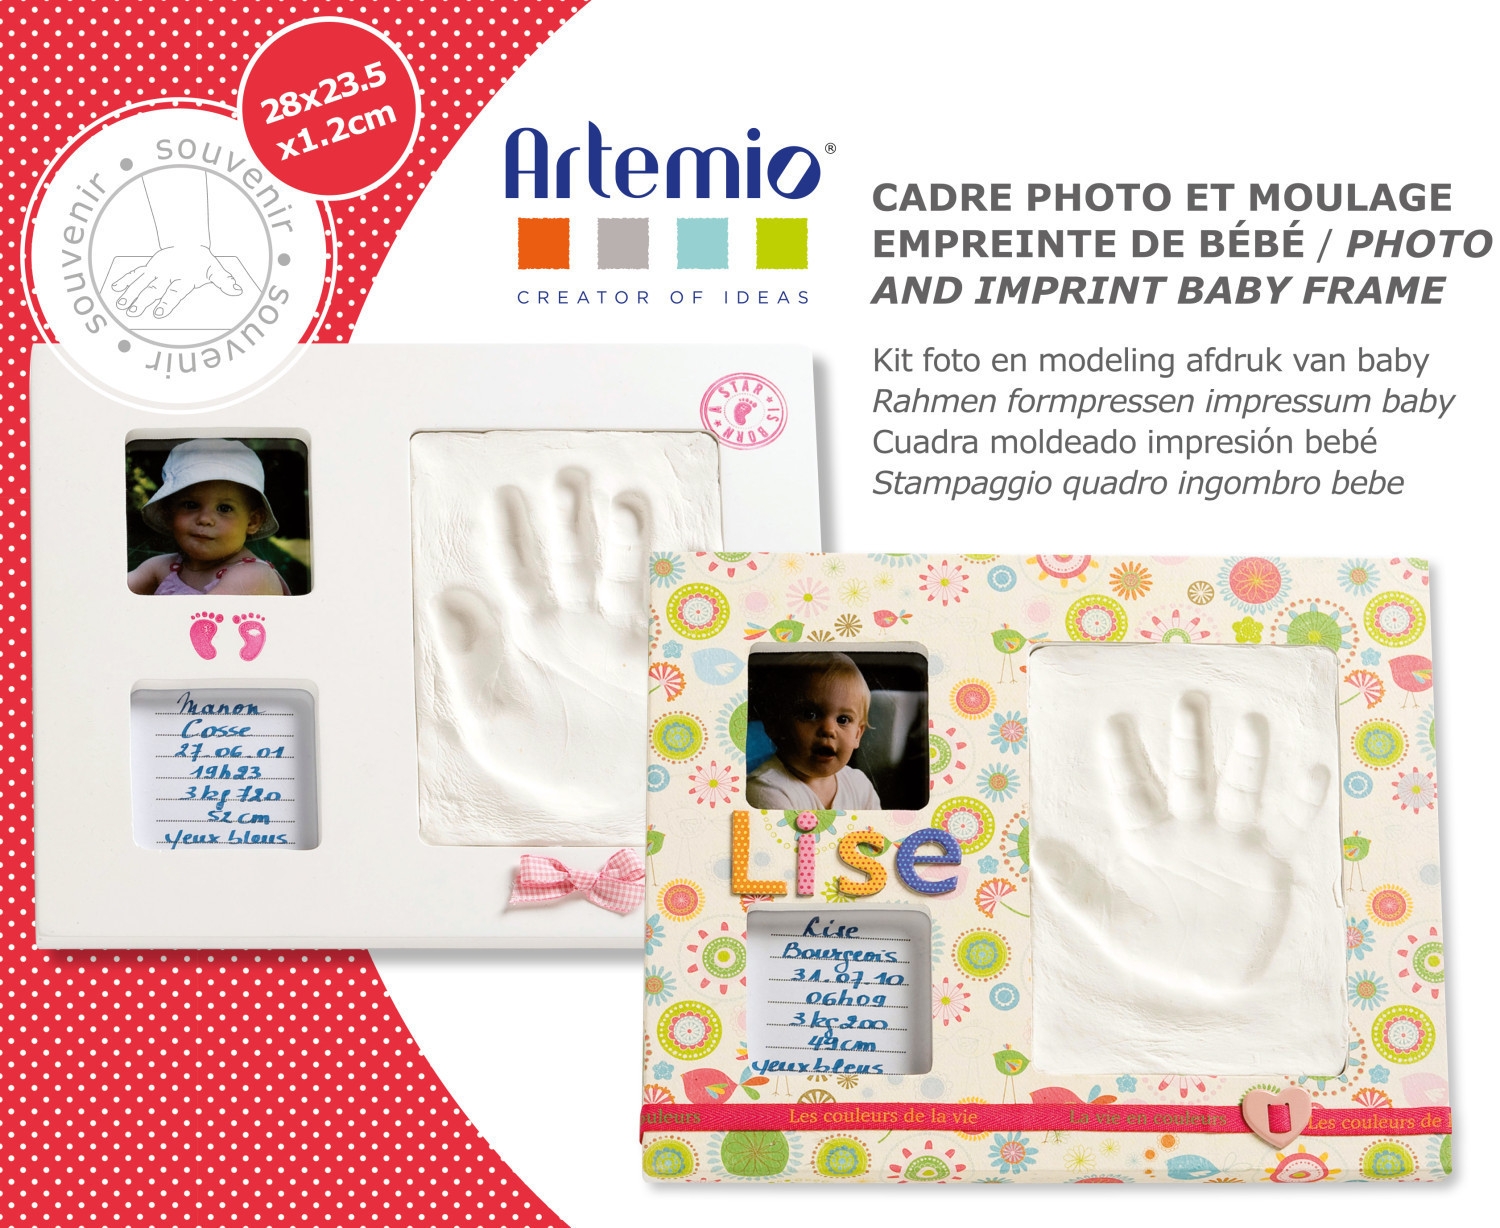 2 cadres photo et empreintes bébé - Artemio